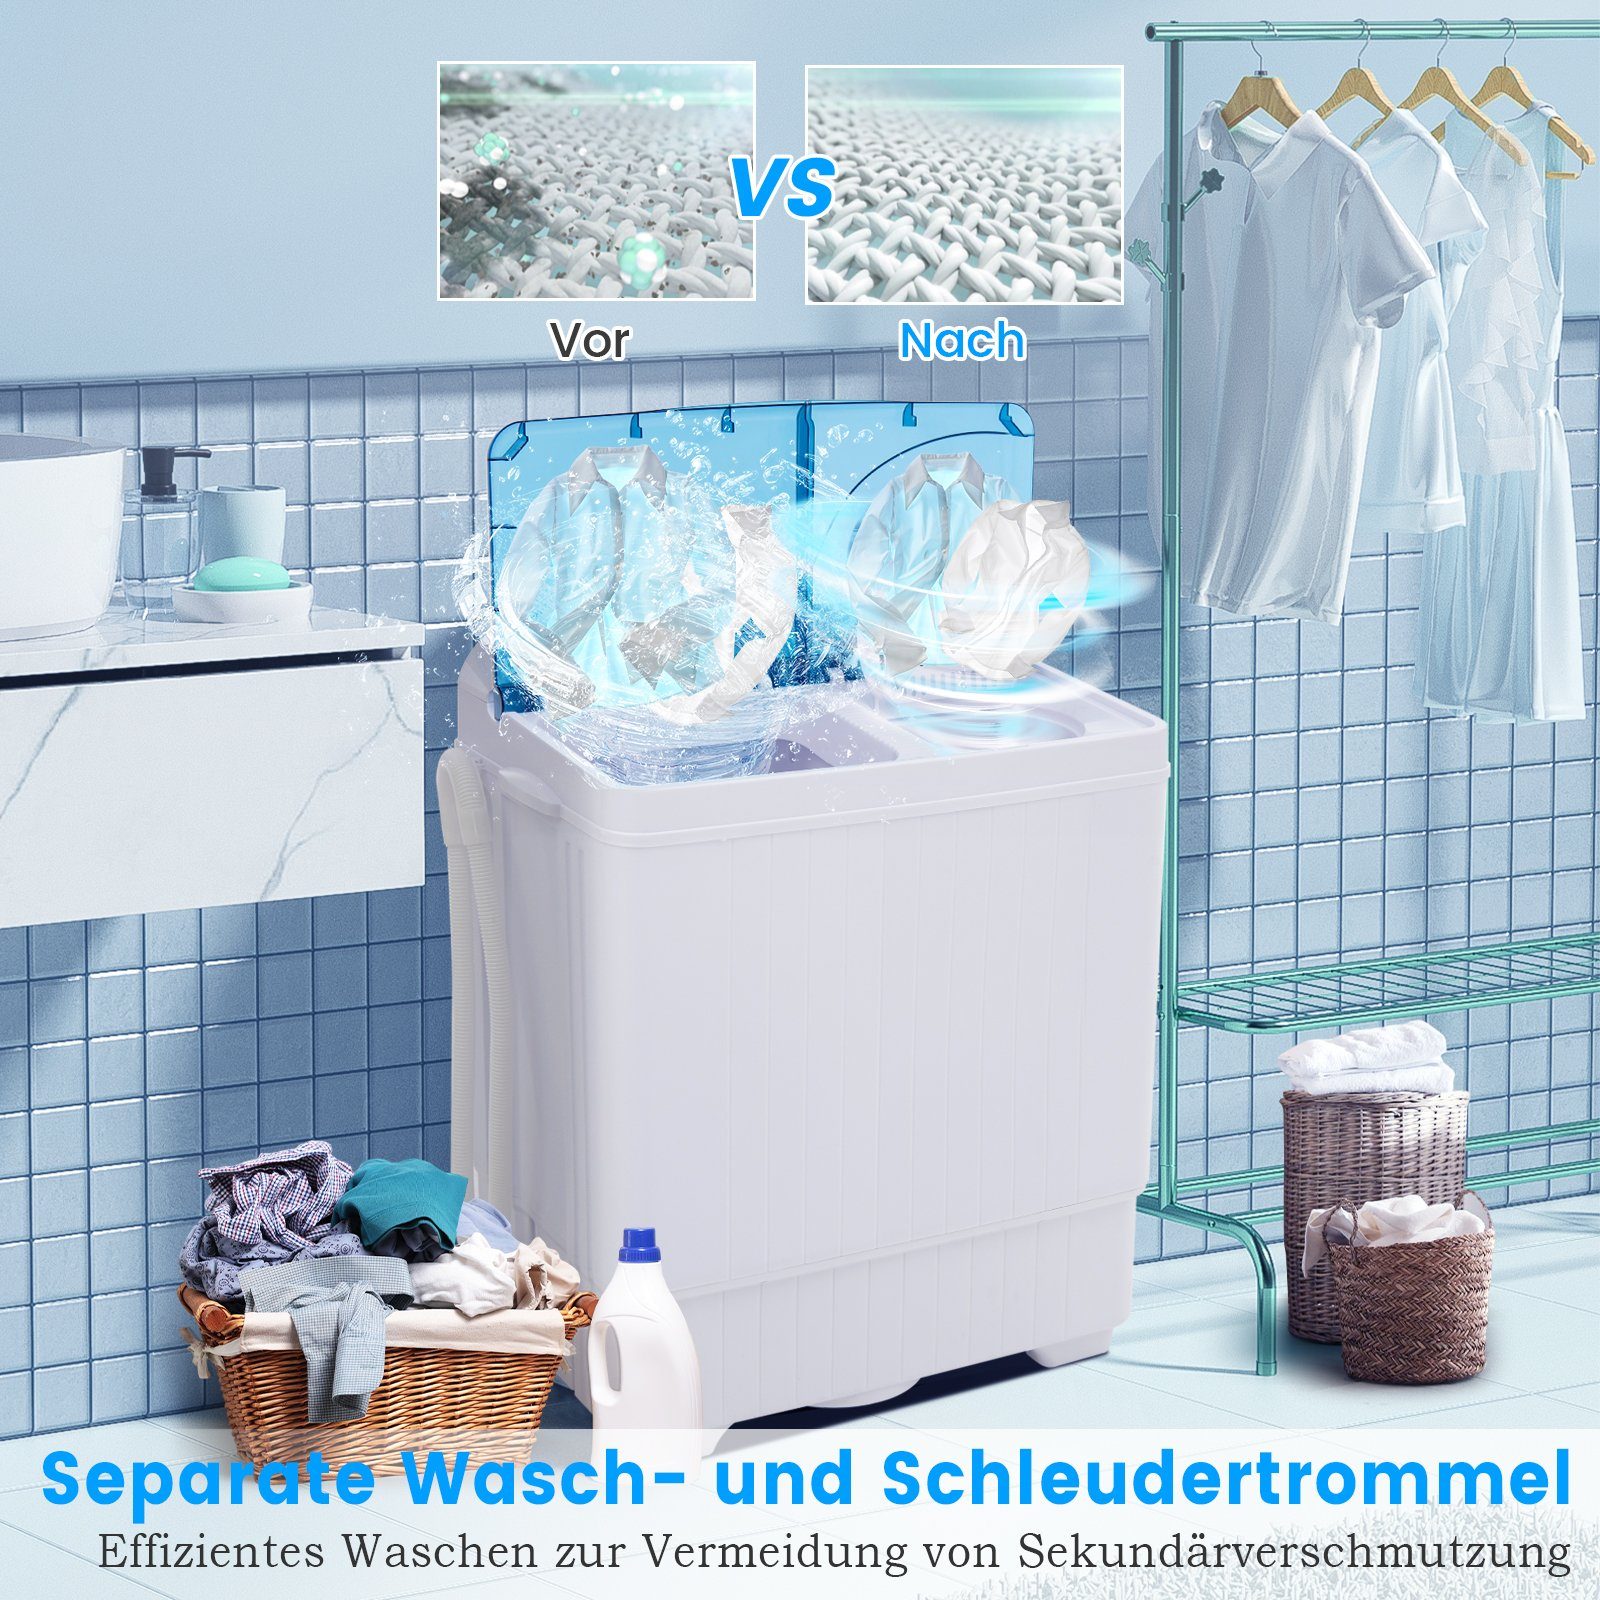 COSTWAY Waschmaschine 1320 kg, Blau, U/min 6.5 Toplader Weiß FP10366DE/XPB65-2368S